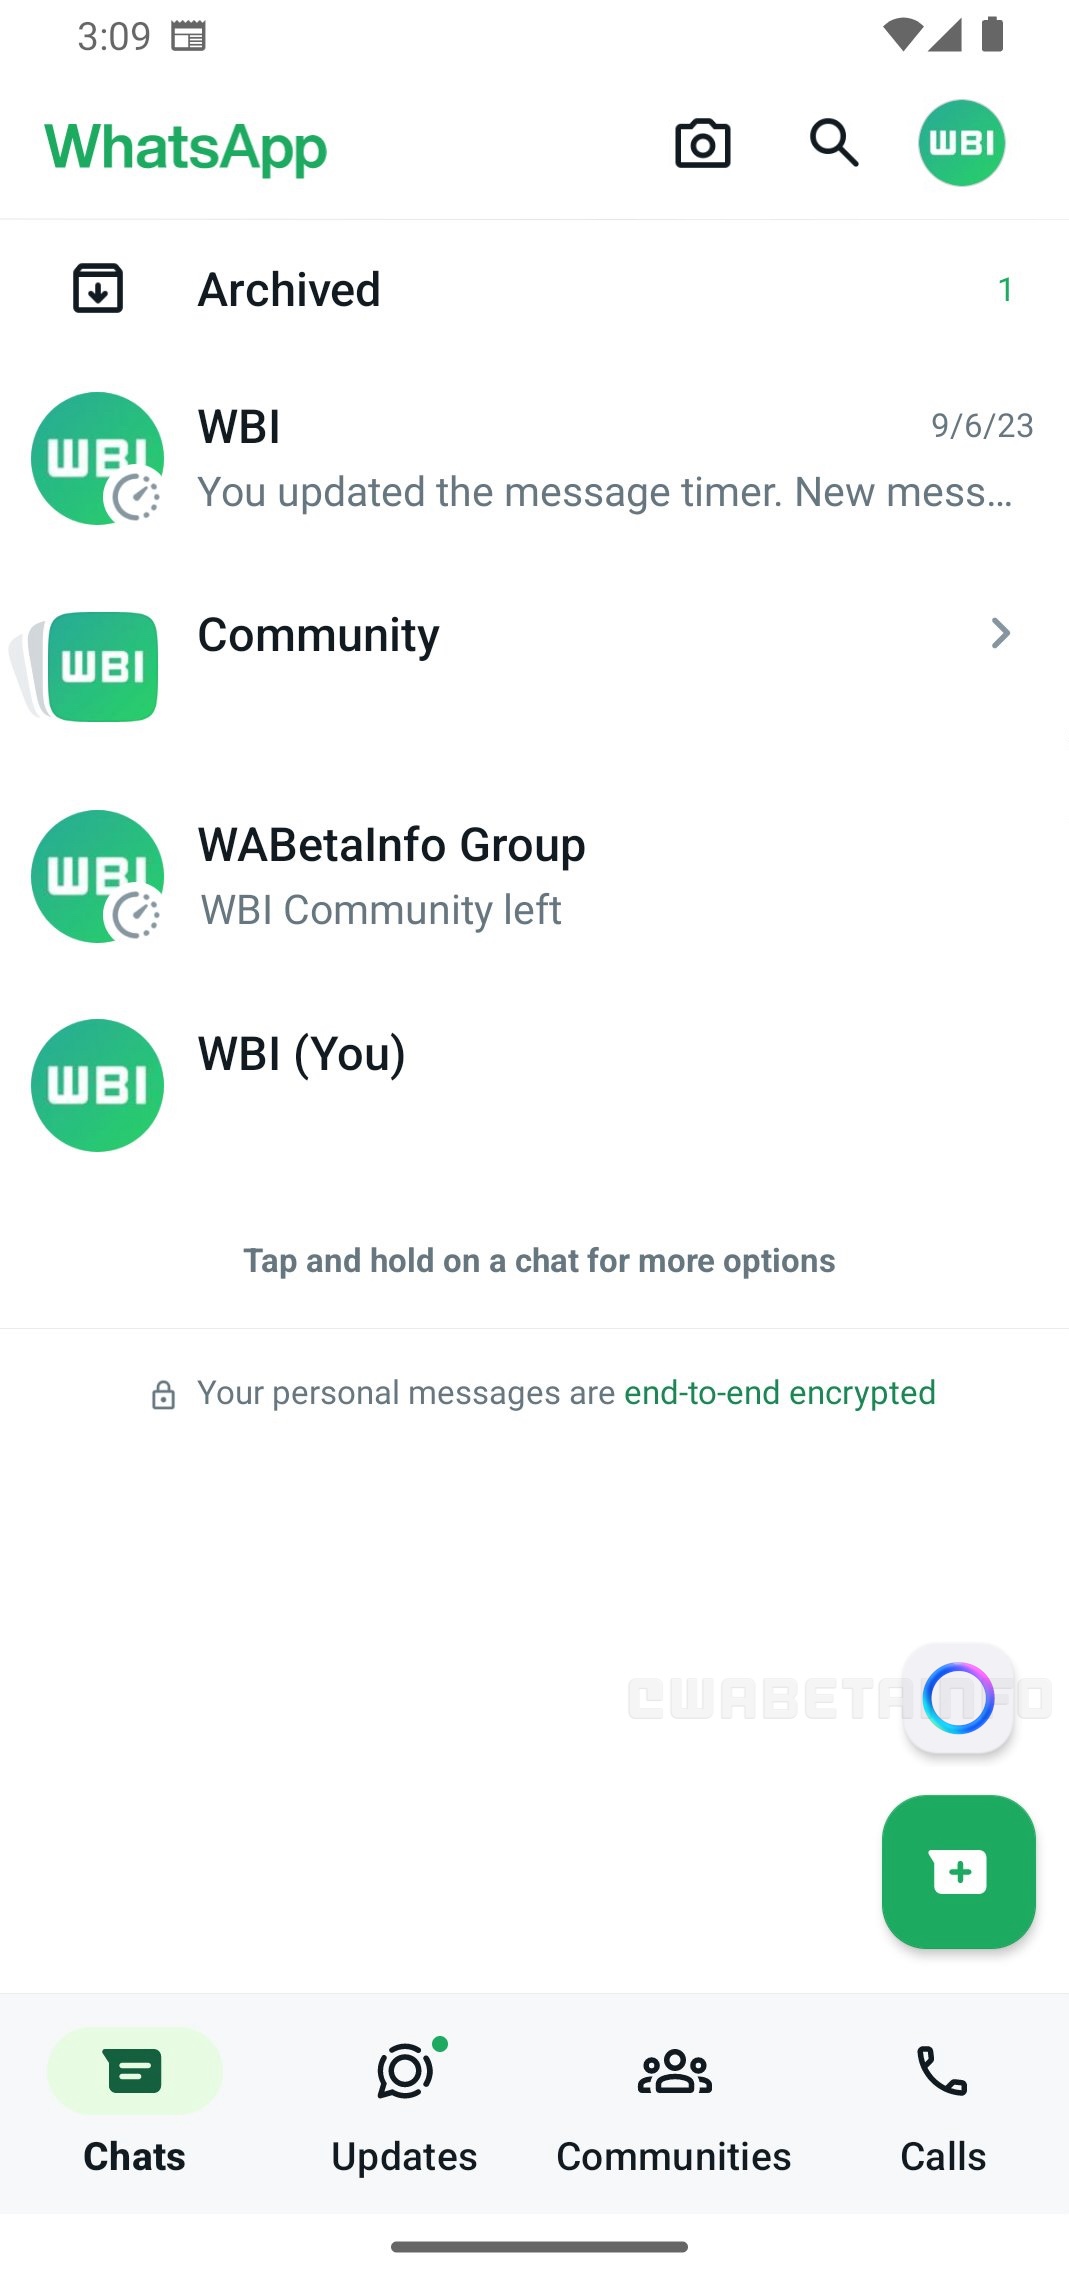 Le chatbot de WhatsApp approcherait-il à grands pas ? © WABetaInfo